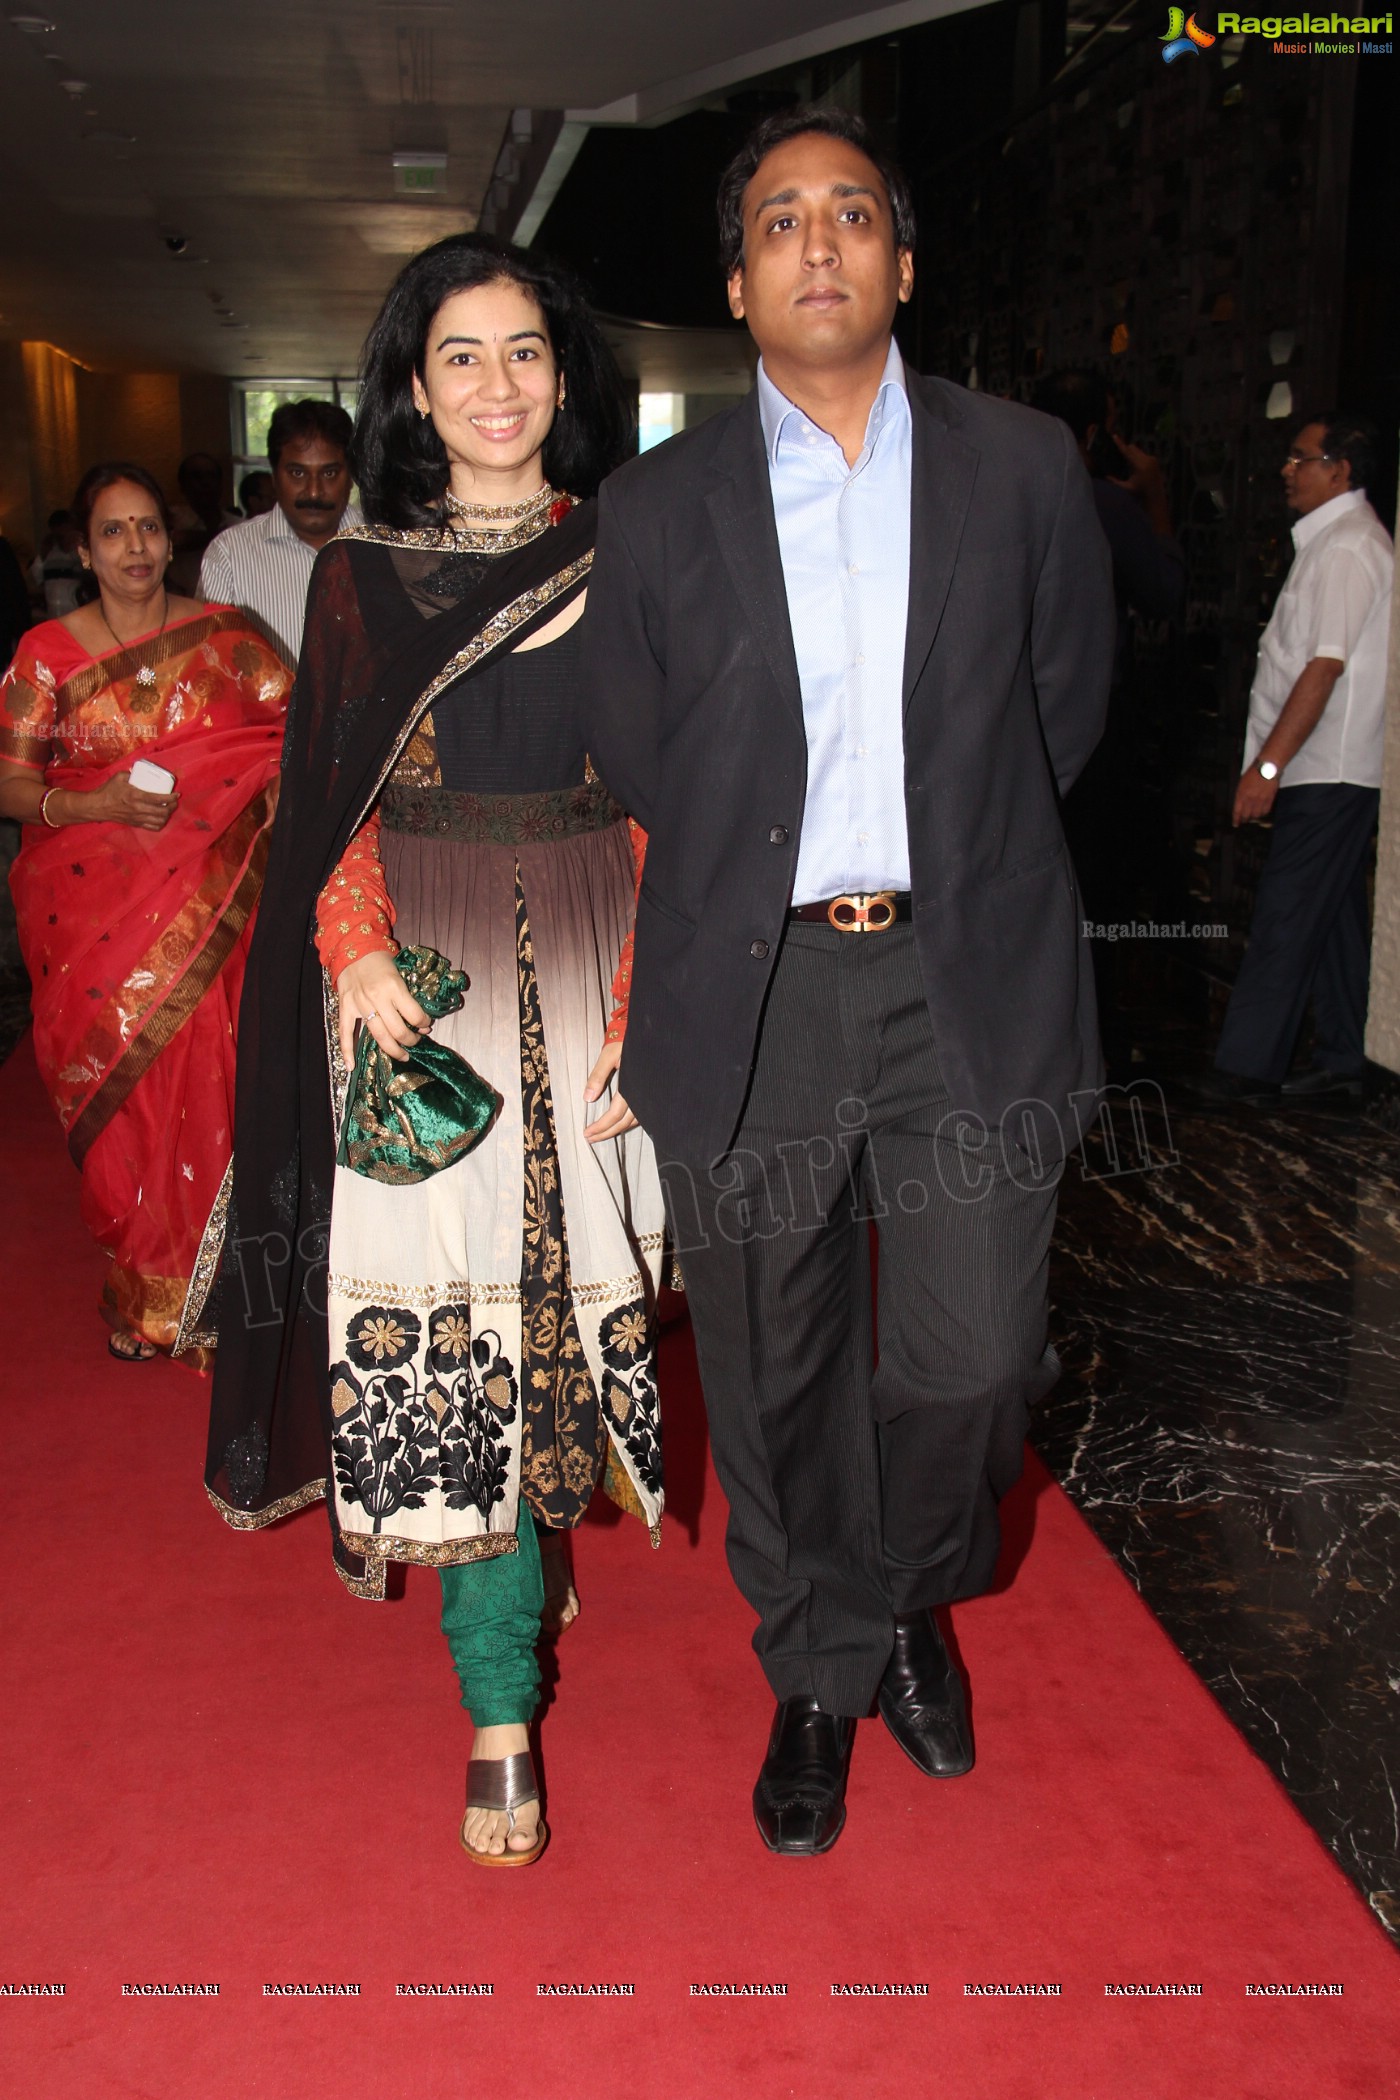 Lakshmi Priyanka-Shravan Kumar's Engagement